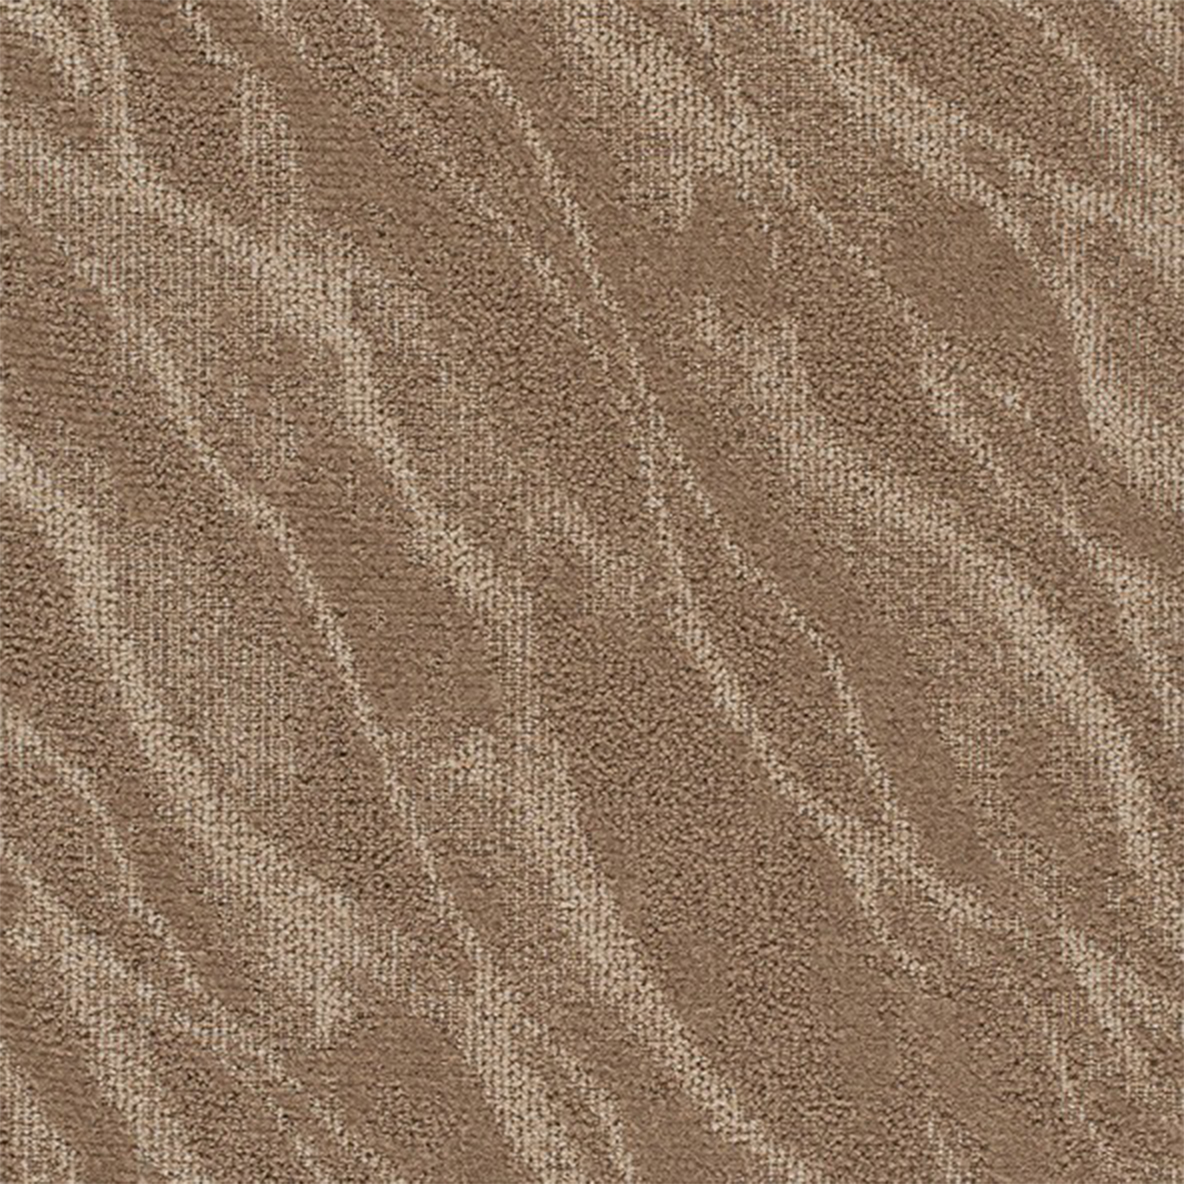 Riverine Commercial Carpet Tile .31 Inch x 50x50 cm per Tile Nautilus color close up